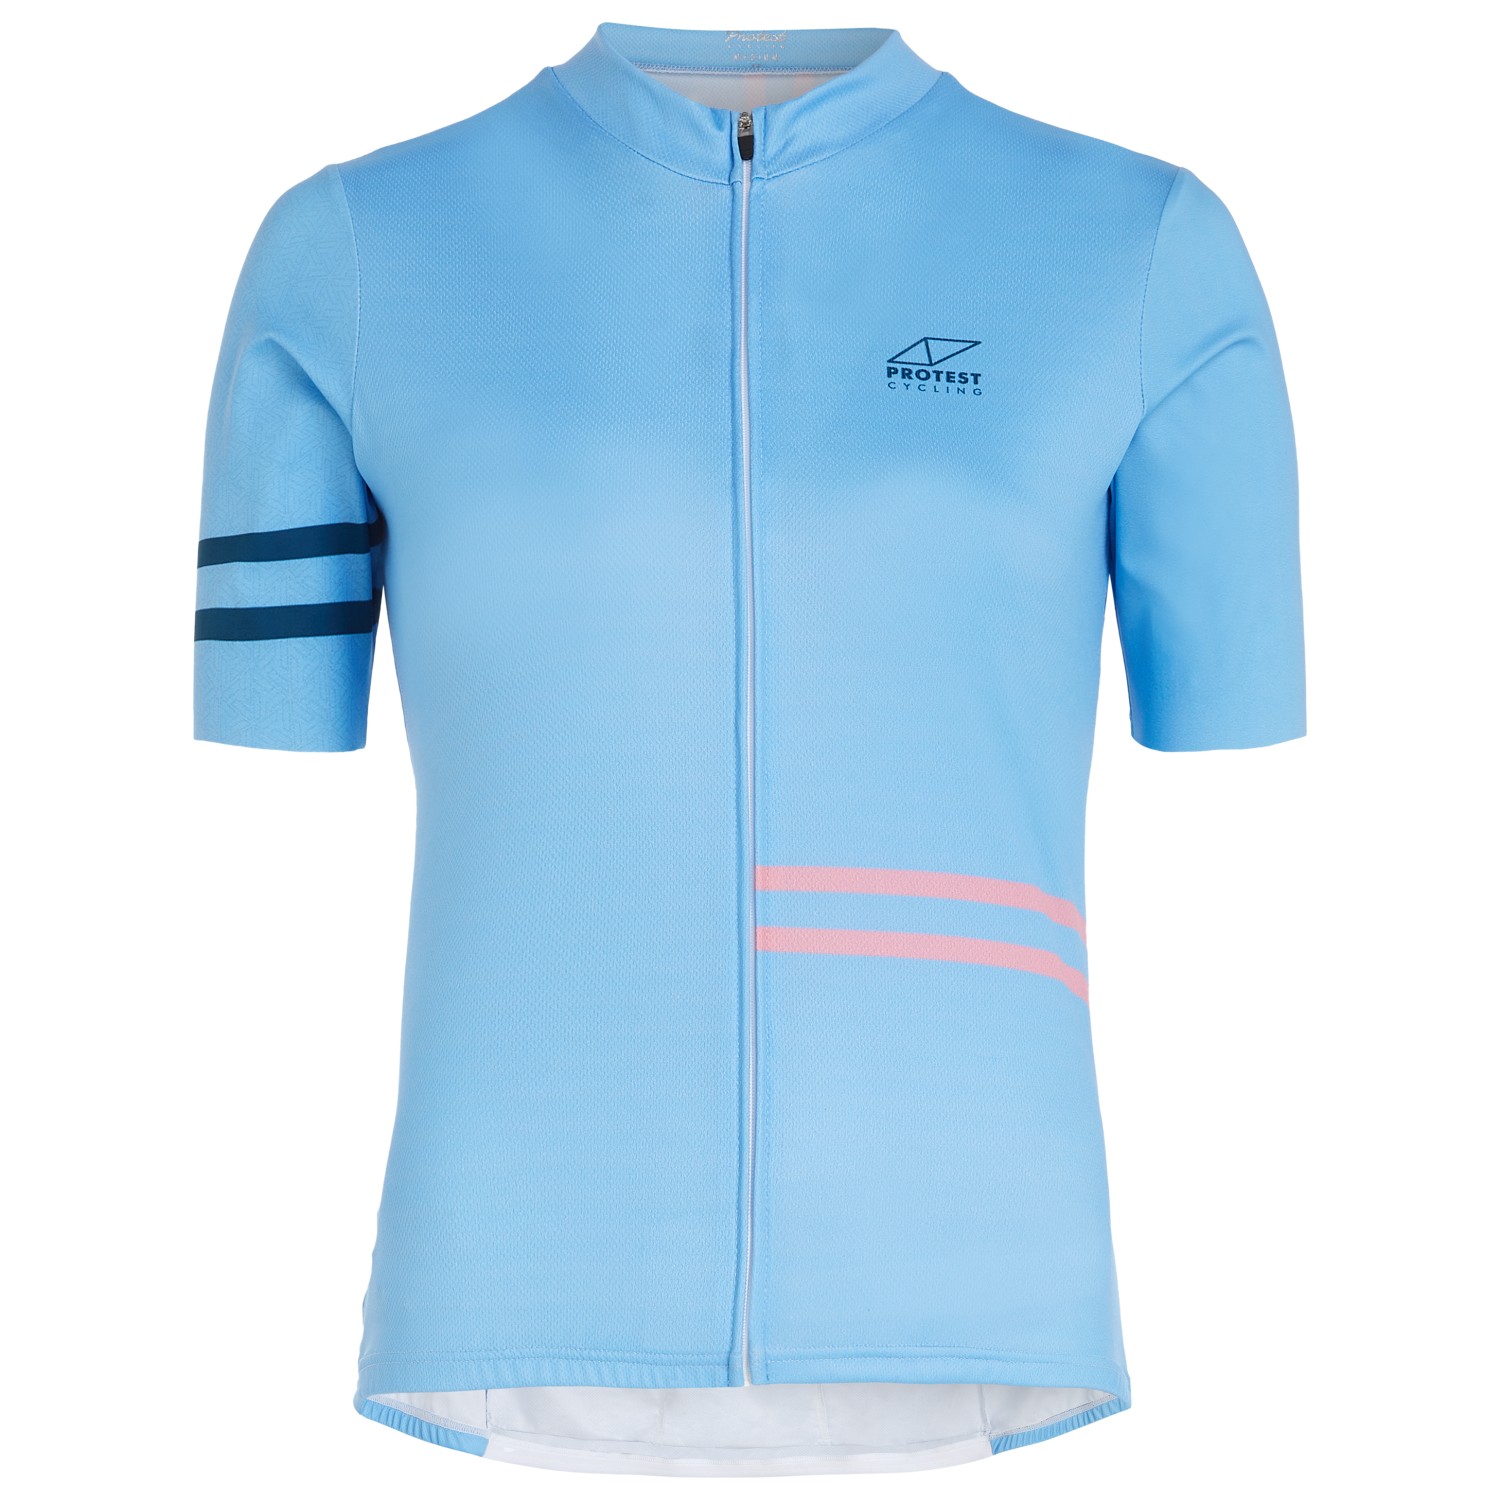 Велосипедный трикотаж Protest Women's Prtciclovia Cycling Jersey Short Sleeve, цвет Havasublue